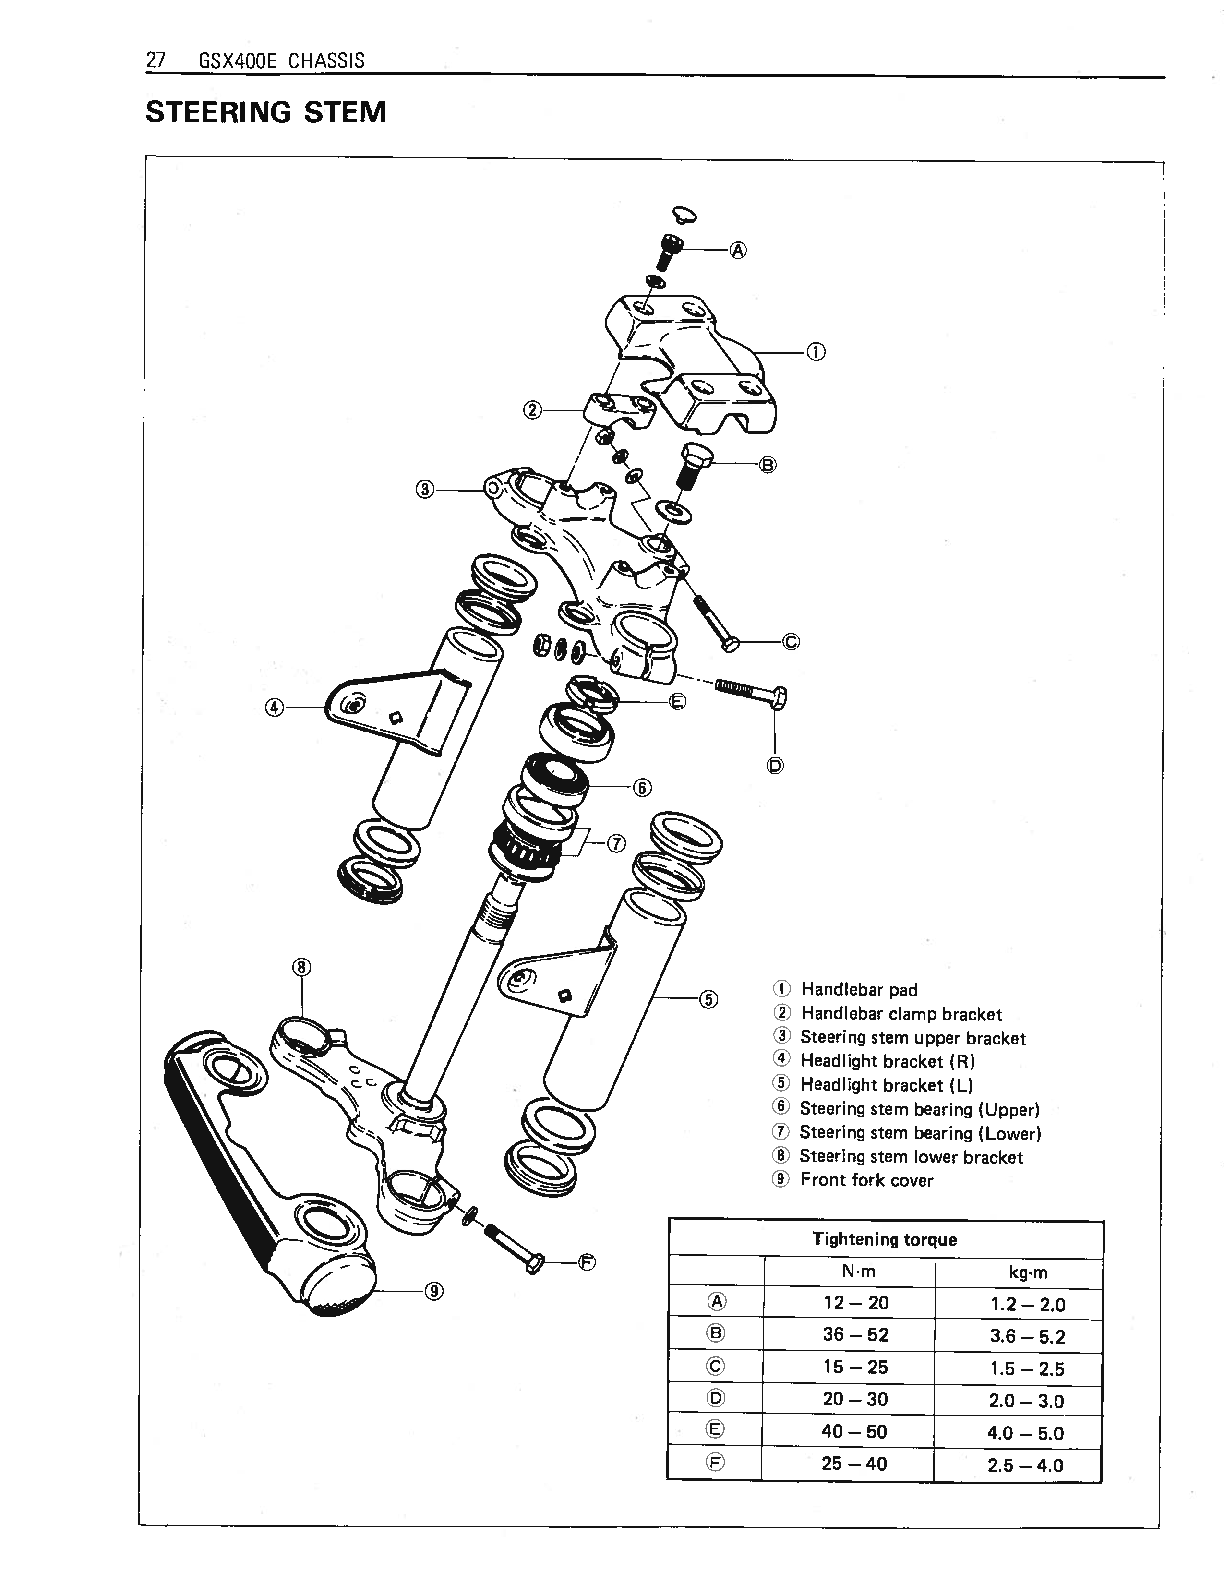 1980-1984 Suzuki GSX400E Twin Cylinder Service Manual